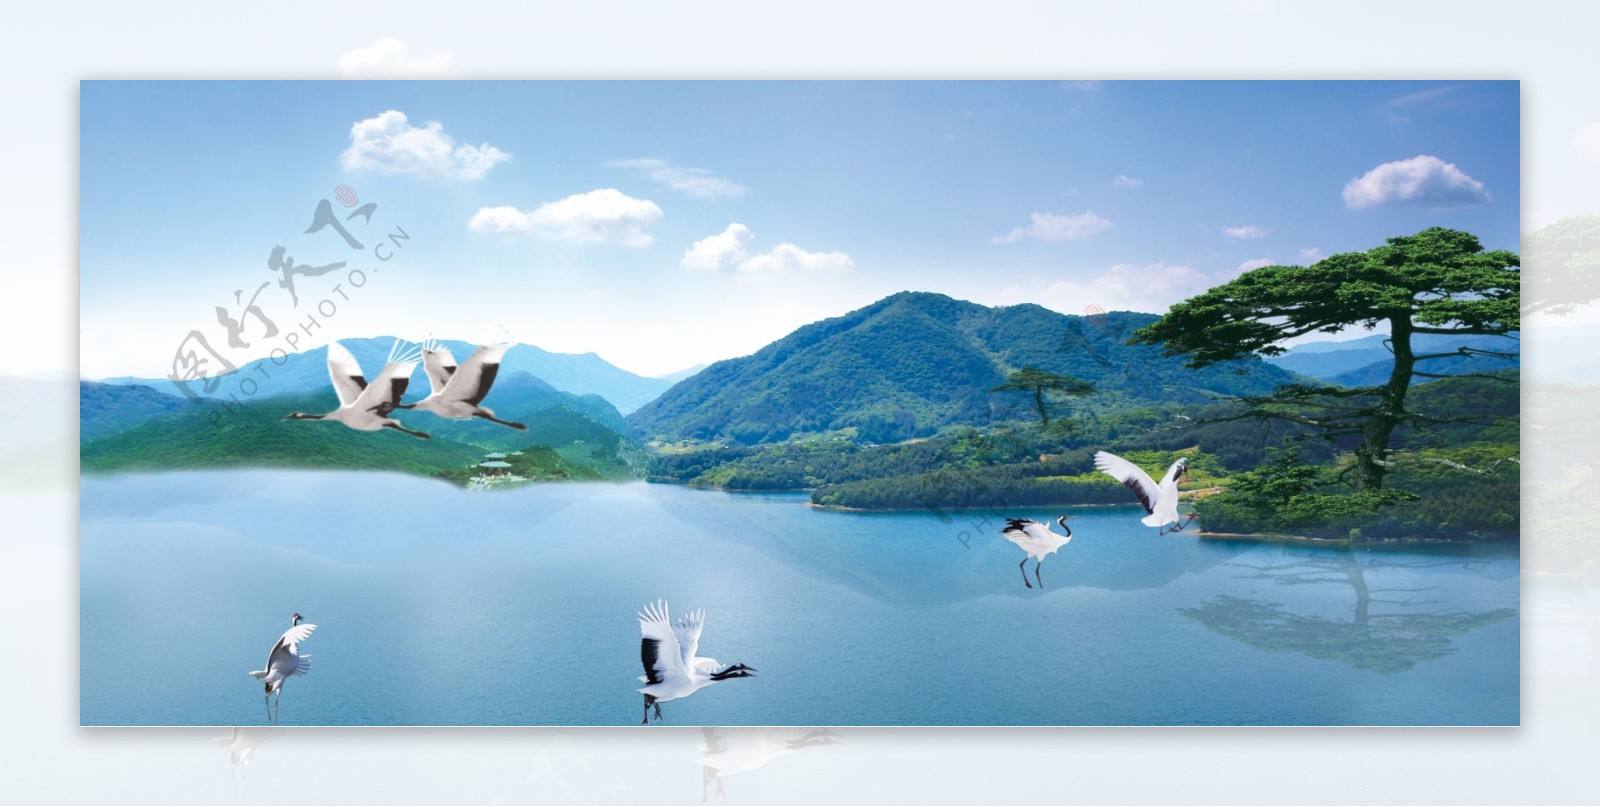 湖泊山水风景画广告素图片